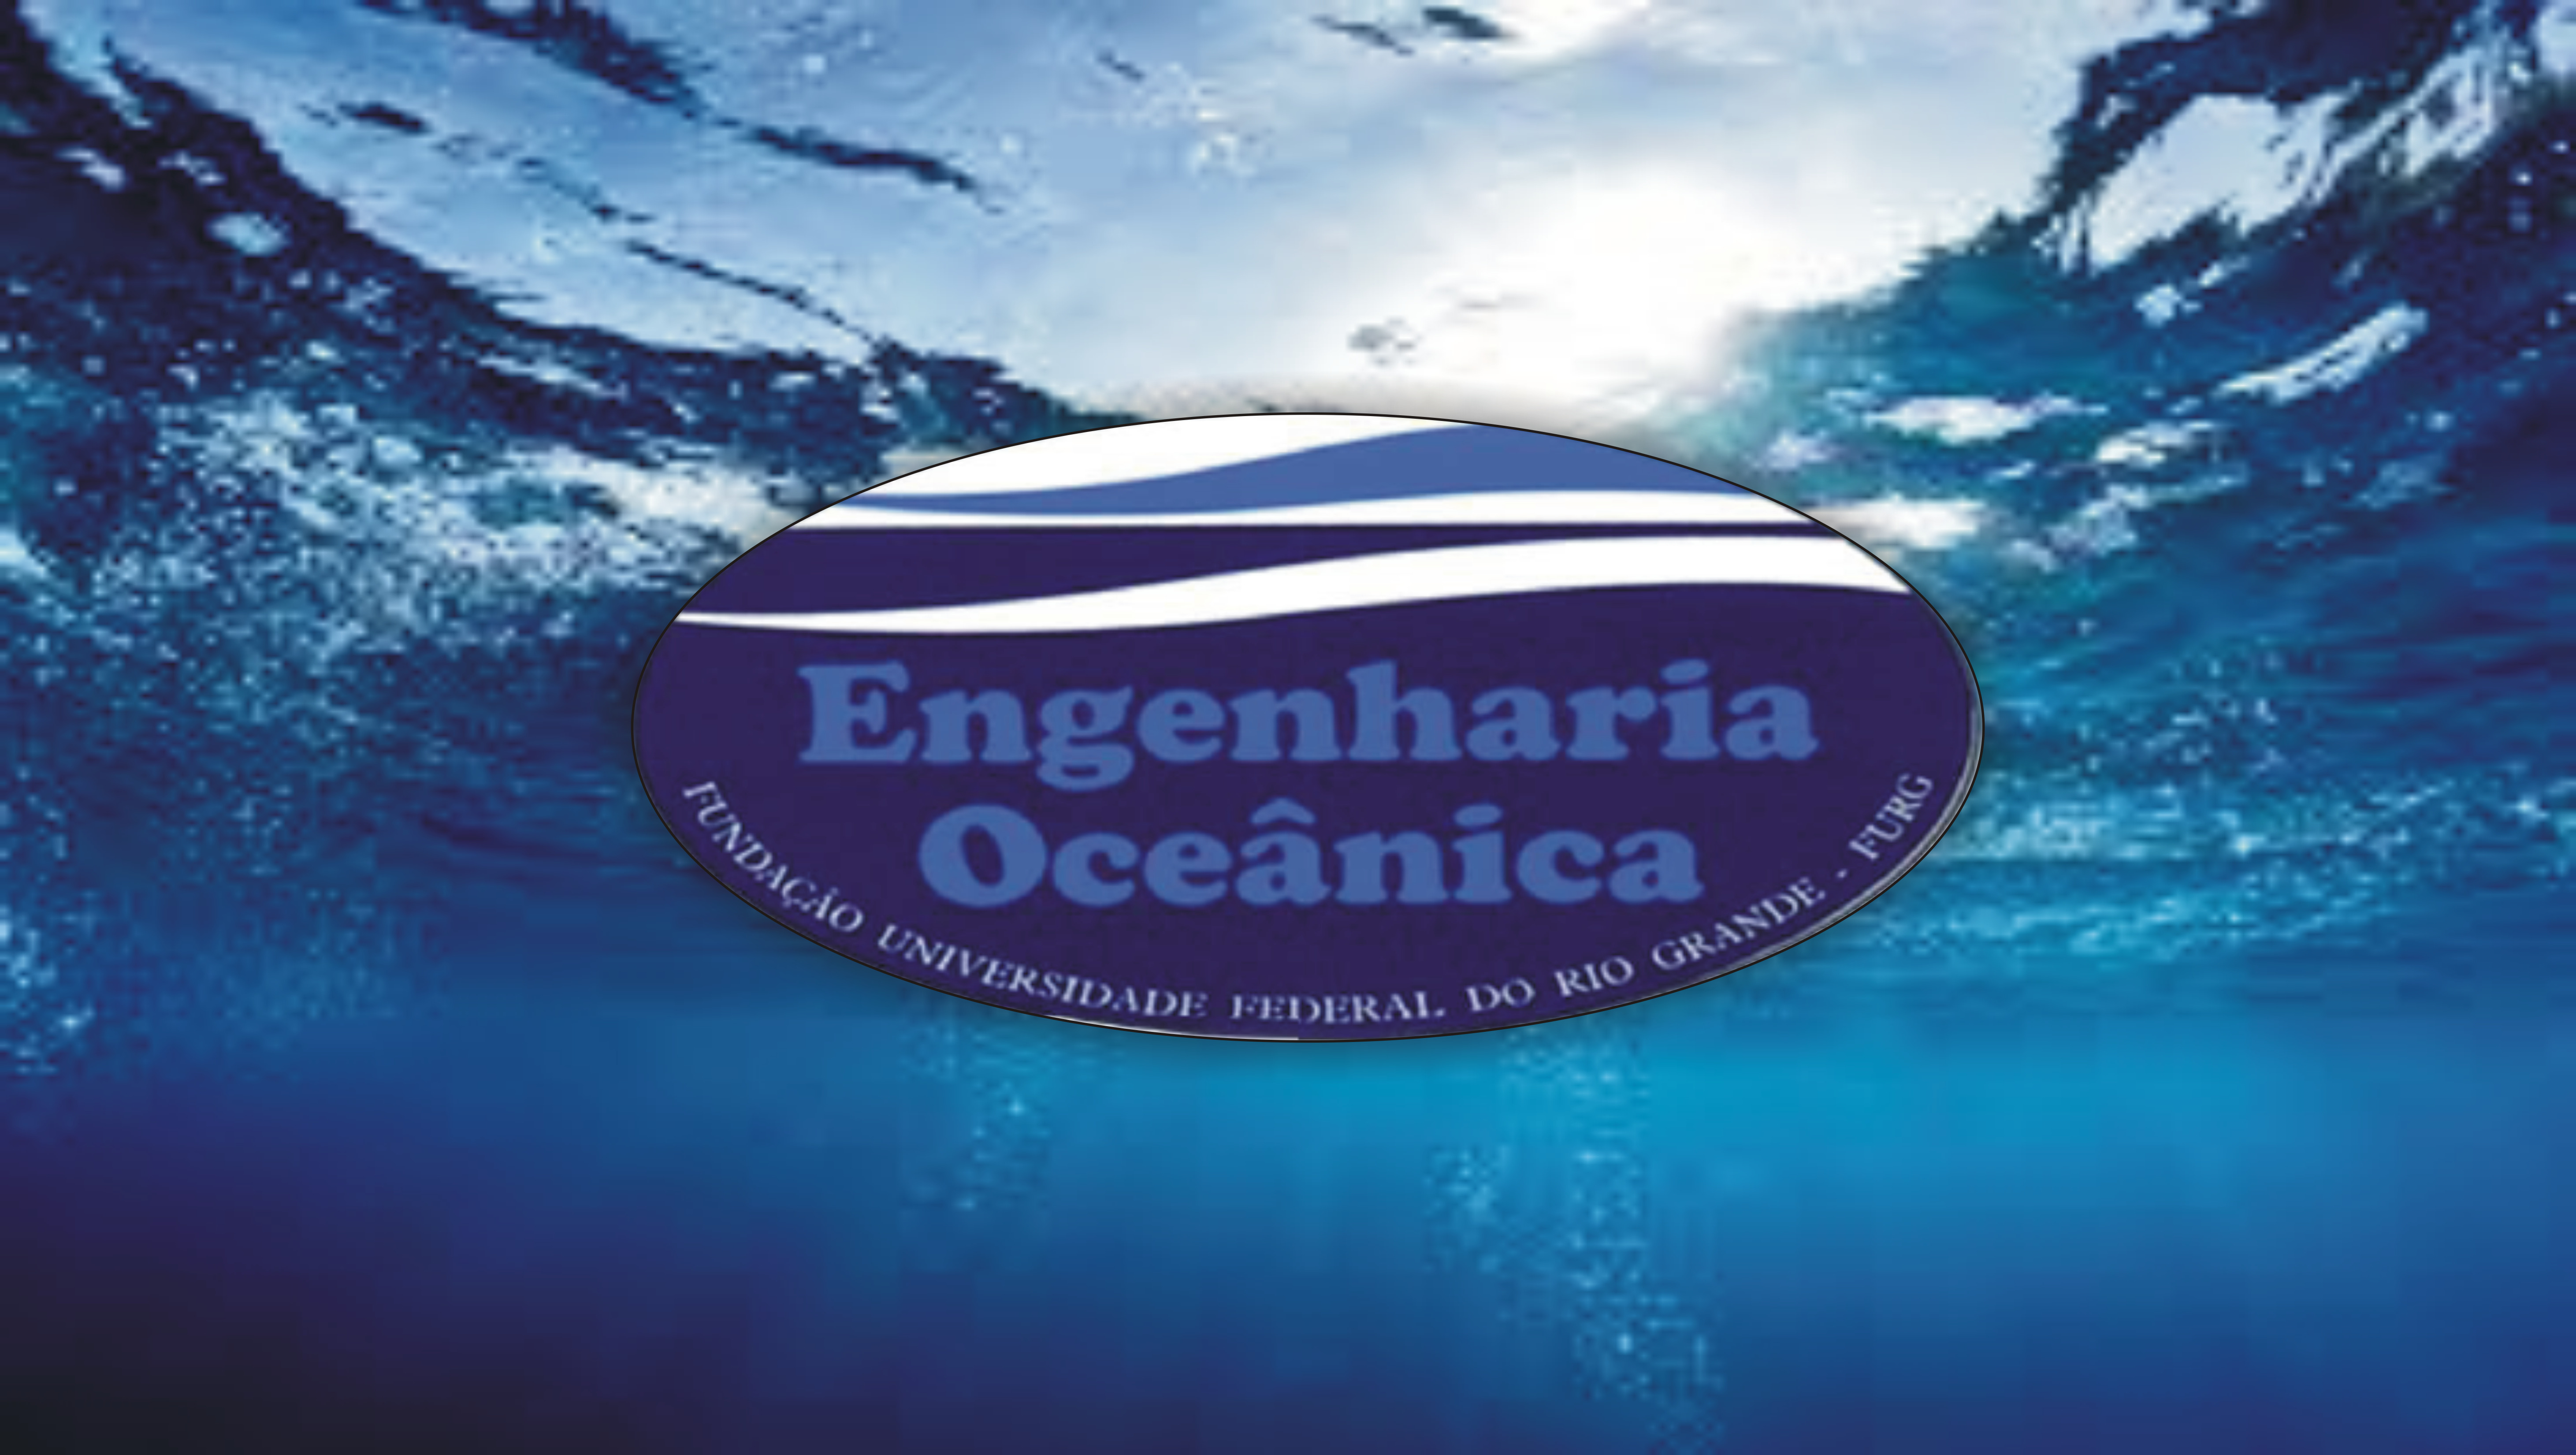 Graduate Program in Ocean Engineering